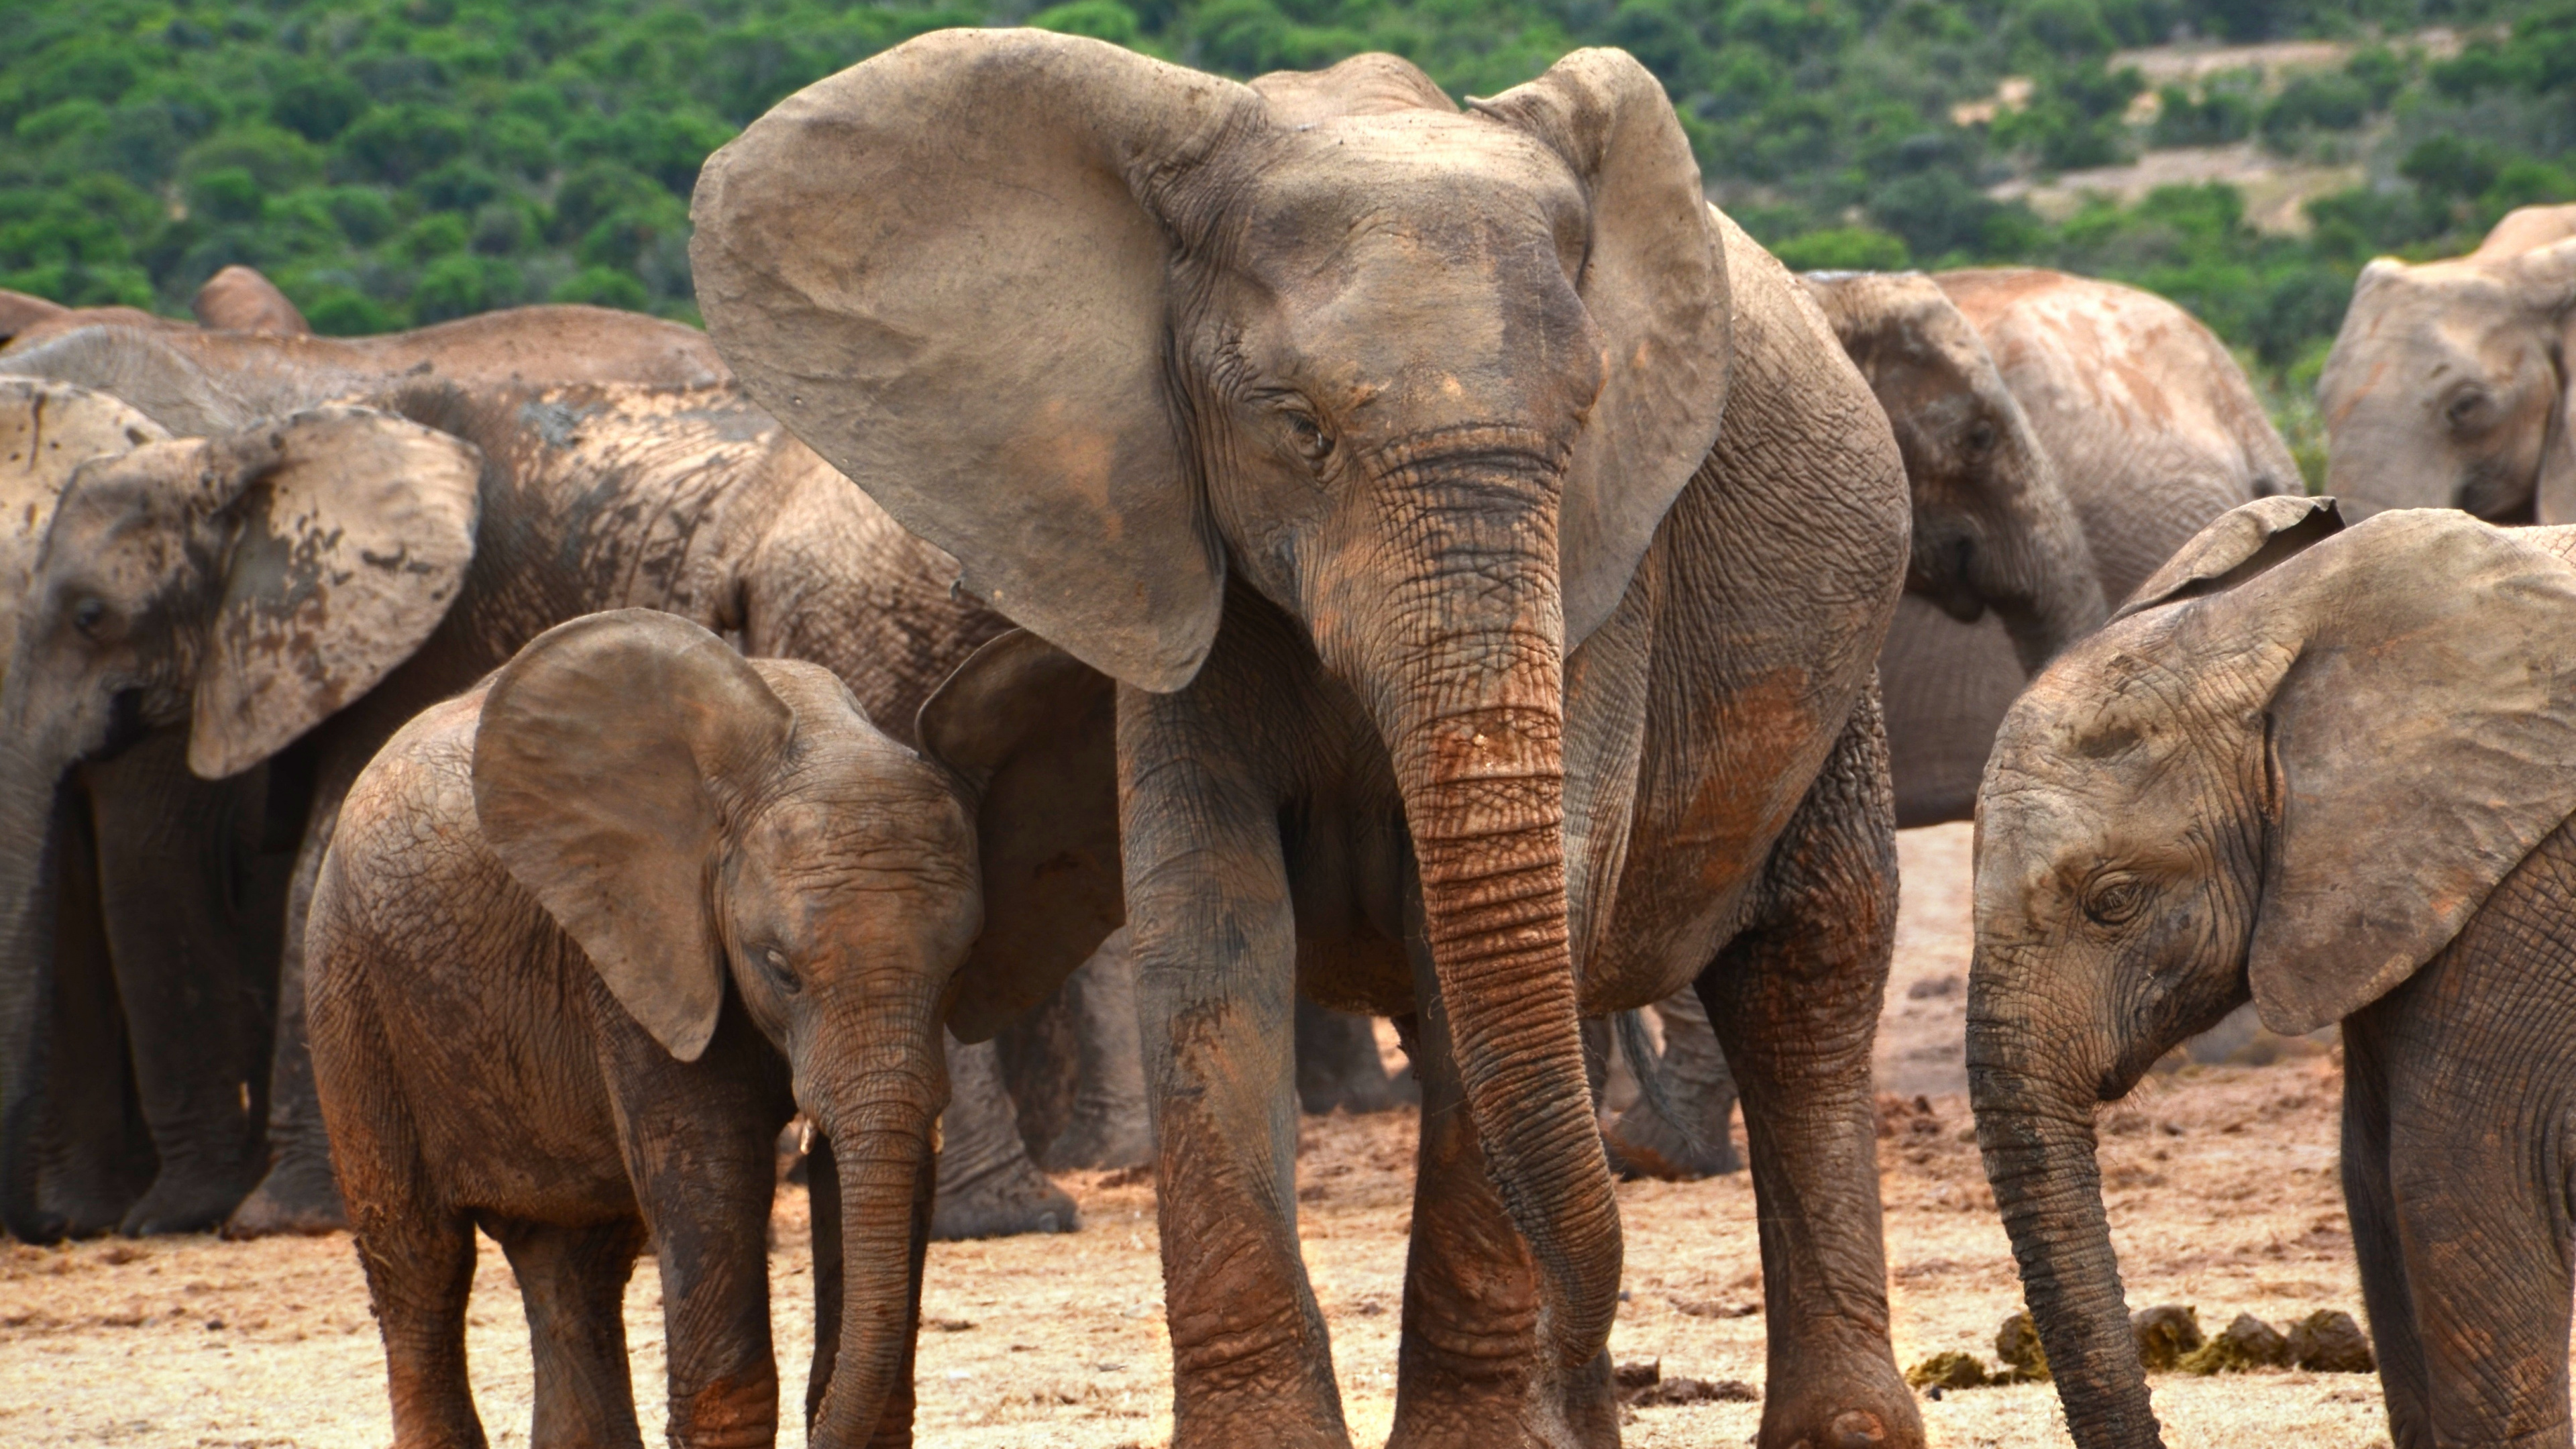 非洲丛林中的大象, 大象和猛犸象, 陆地动物, 野生动物, 印度大象 壁纸 3840x2160 允许